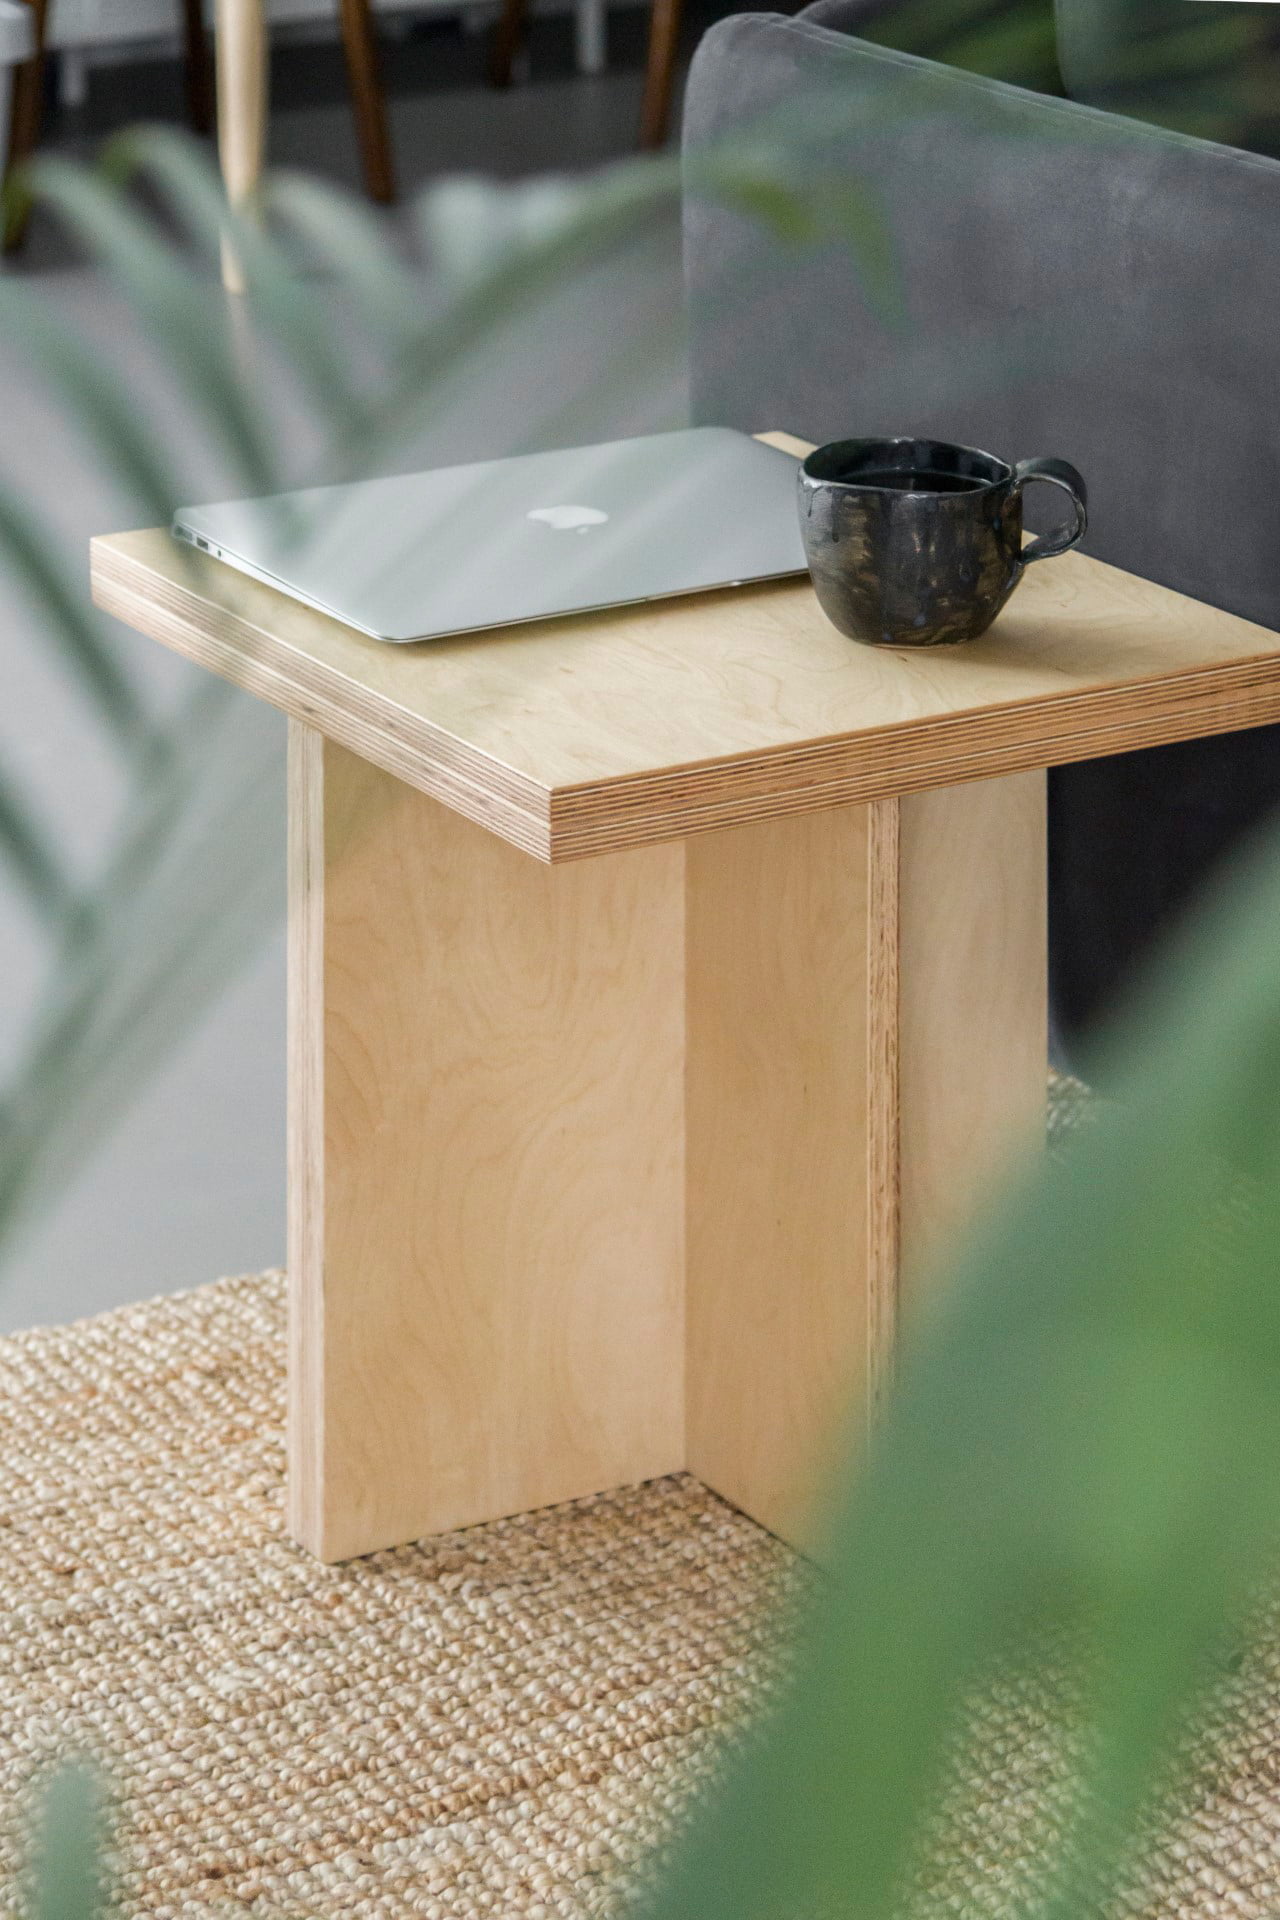 Minimalistyczny stolik ze sklejki brzozowej, styl japoński, meble ze sklejki